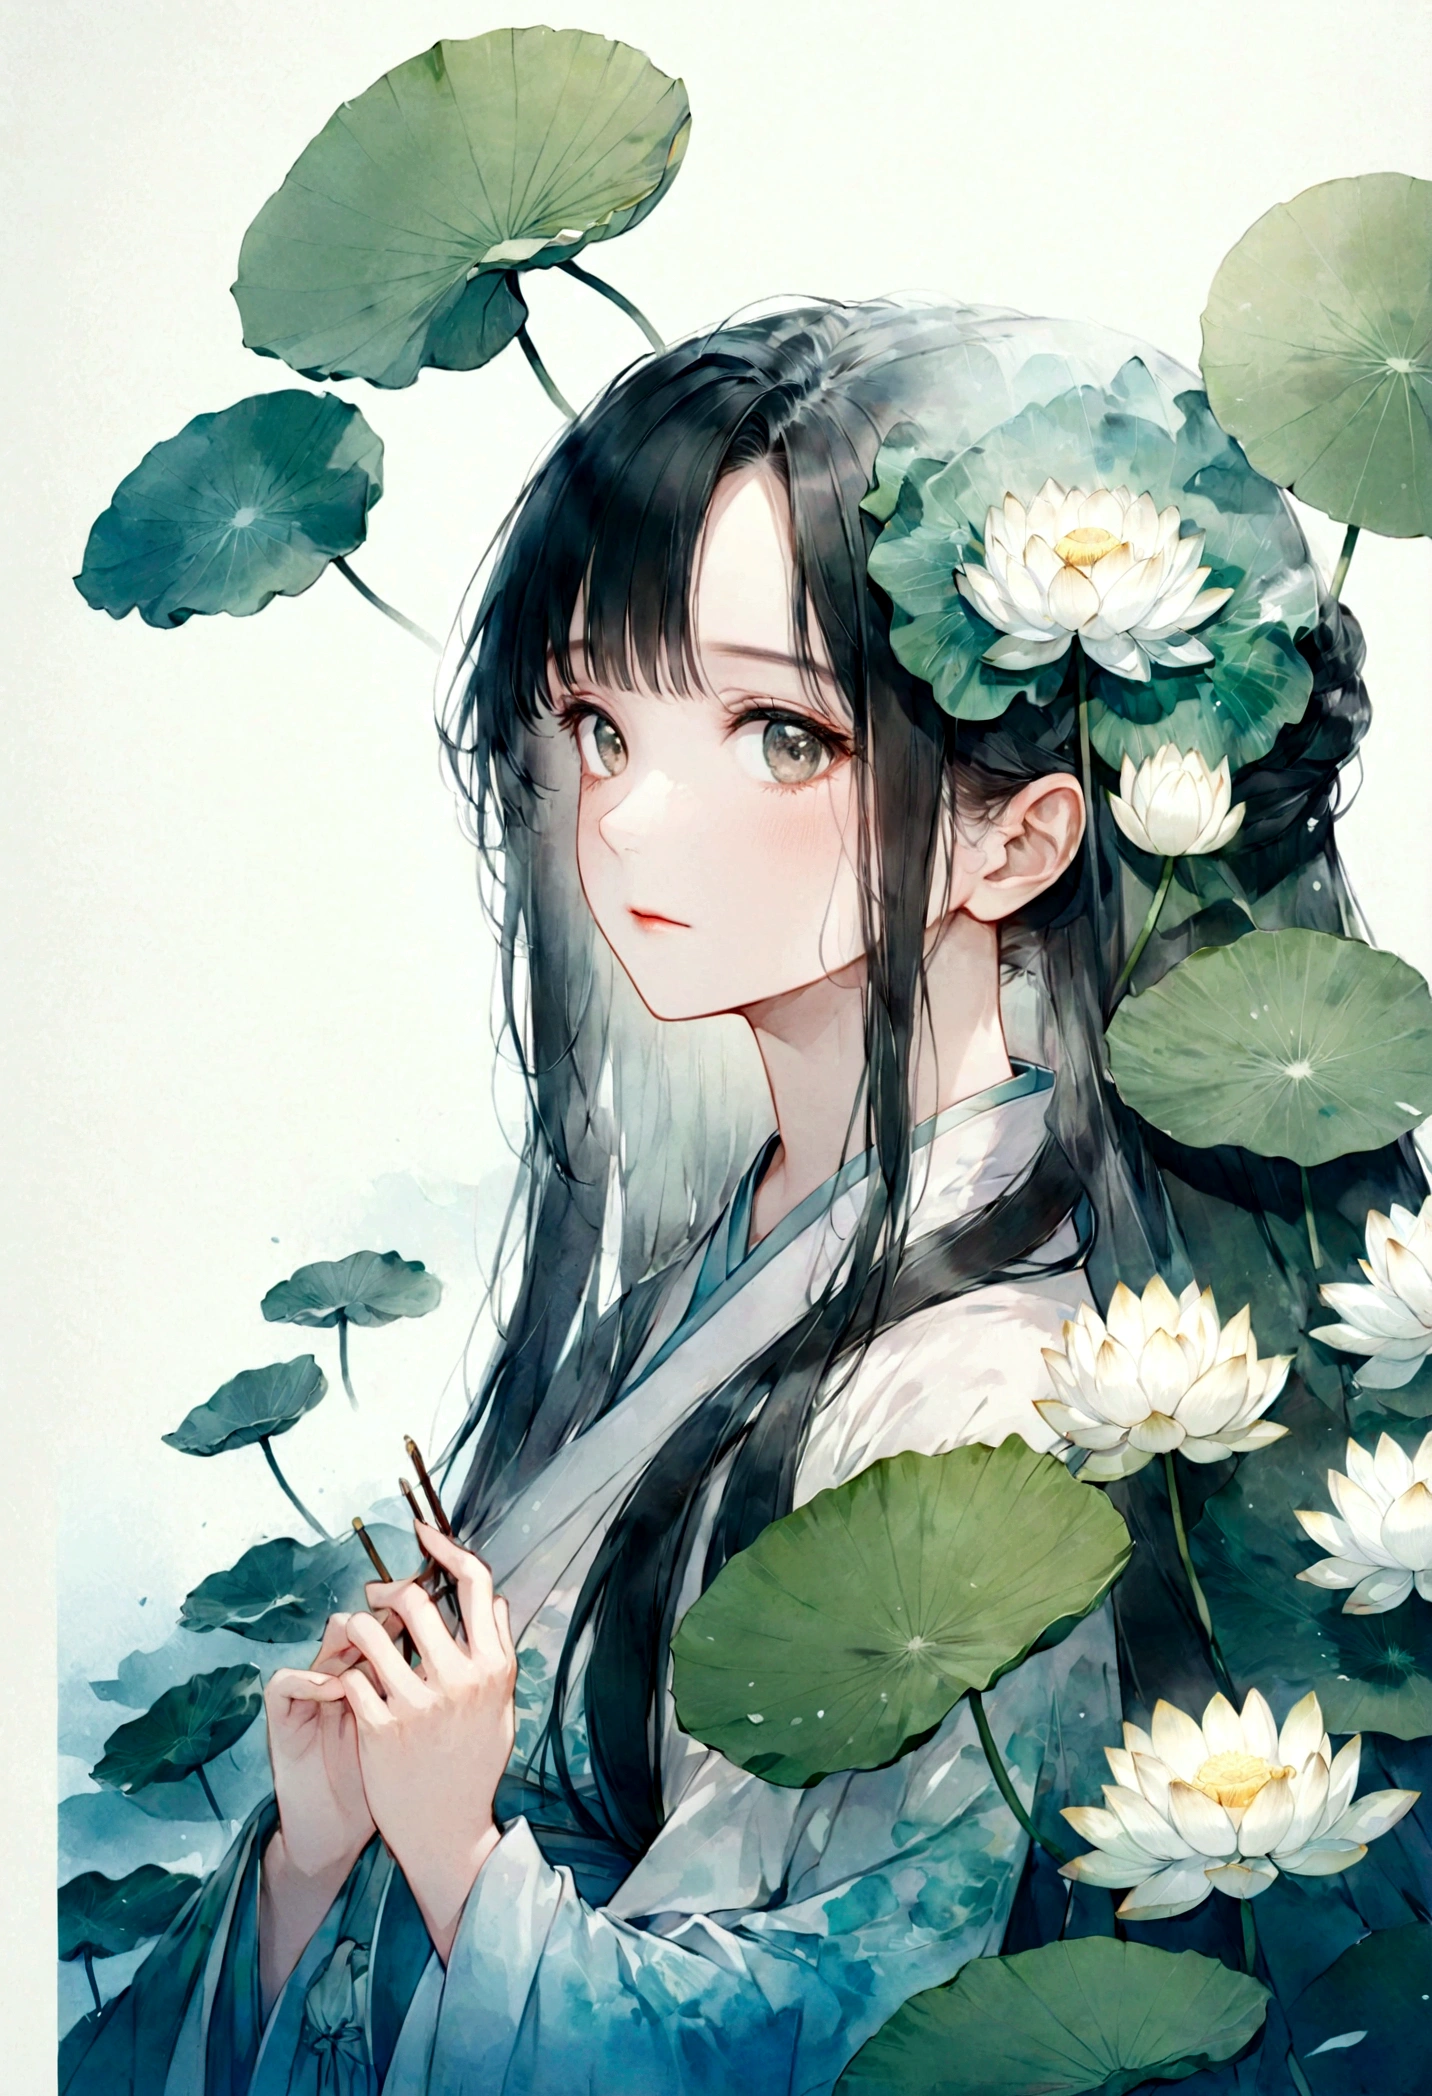    中国の漢服を着た長い髪の美しく詳細な女の子の二重露光フラットベクター(顔はきれい, beautiful and 完璧)画像 ( 完璧解剖结构 ) ，背景には巨大な白い蓮の花と巨大な蓮の葉が描かれている(半透明の白い蓮の葉) 完璧, 美しく, 精巧なインクイラストスタイル,   夢のような幻想的なアートワーク、コンセプチュアルなアートワークの傑作, 最高品質, 非常に詳細な, 高品質で細心の注意を払った水彩画スタイルのフラットベクター 

                          